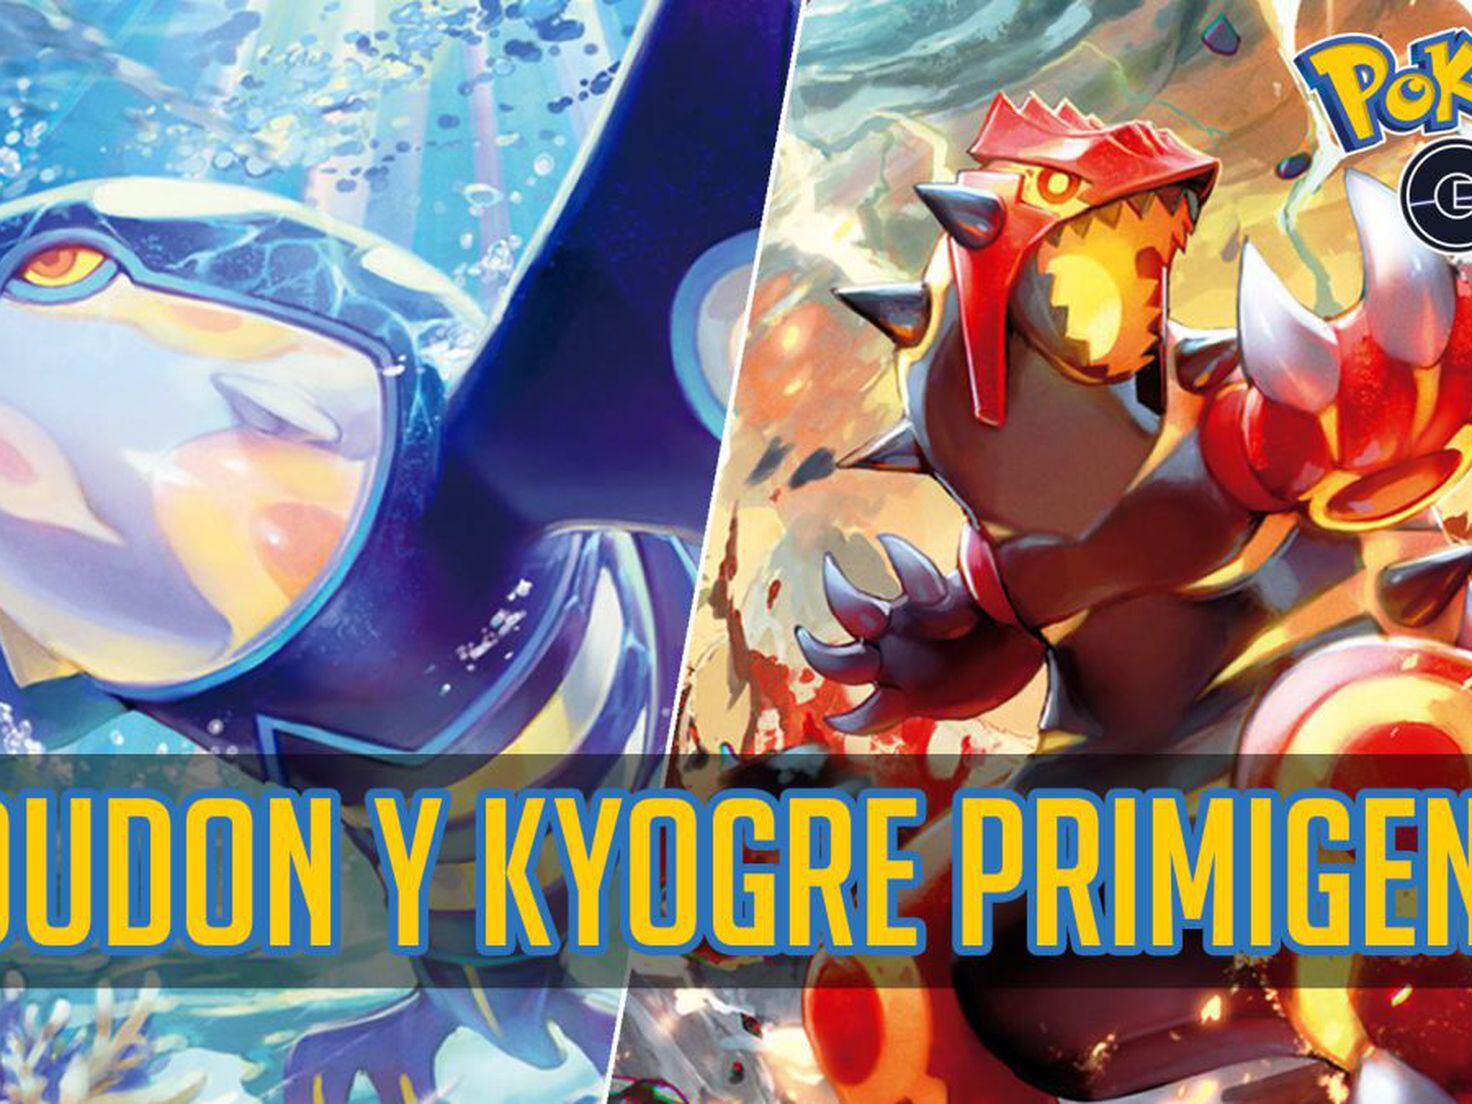 Consiga Kyogre e Groudon Primal no Pokémon GO em 2023